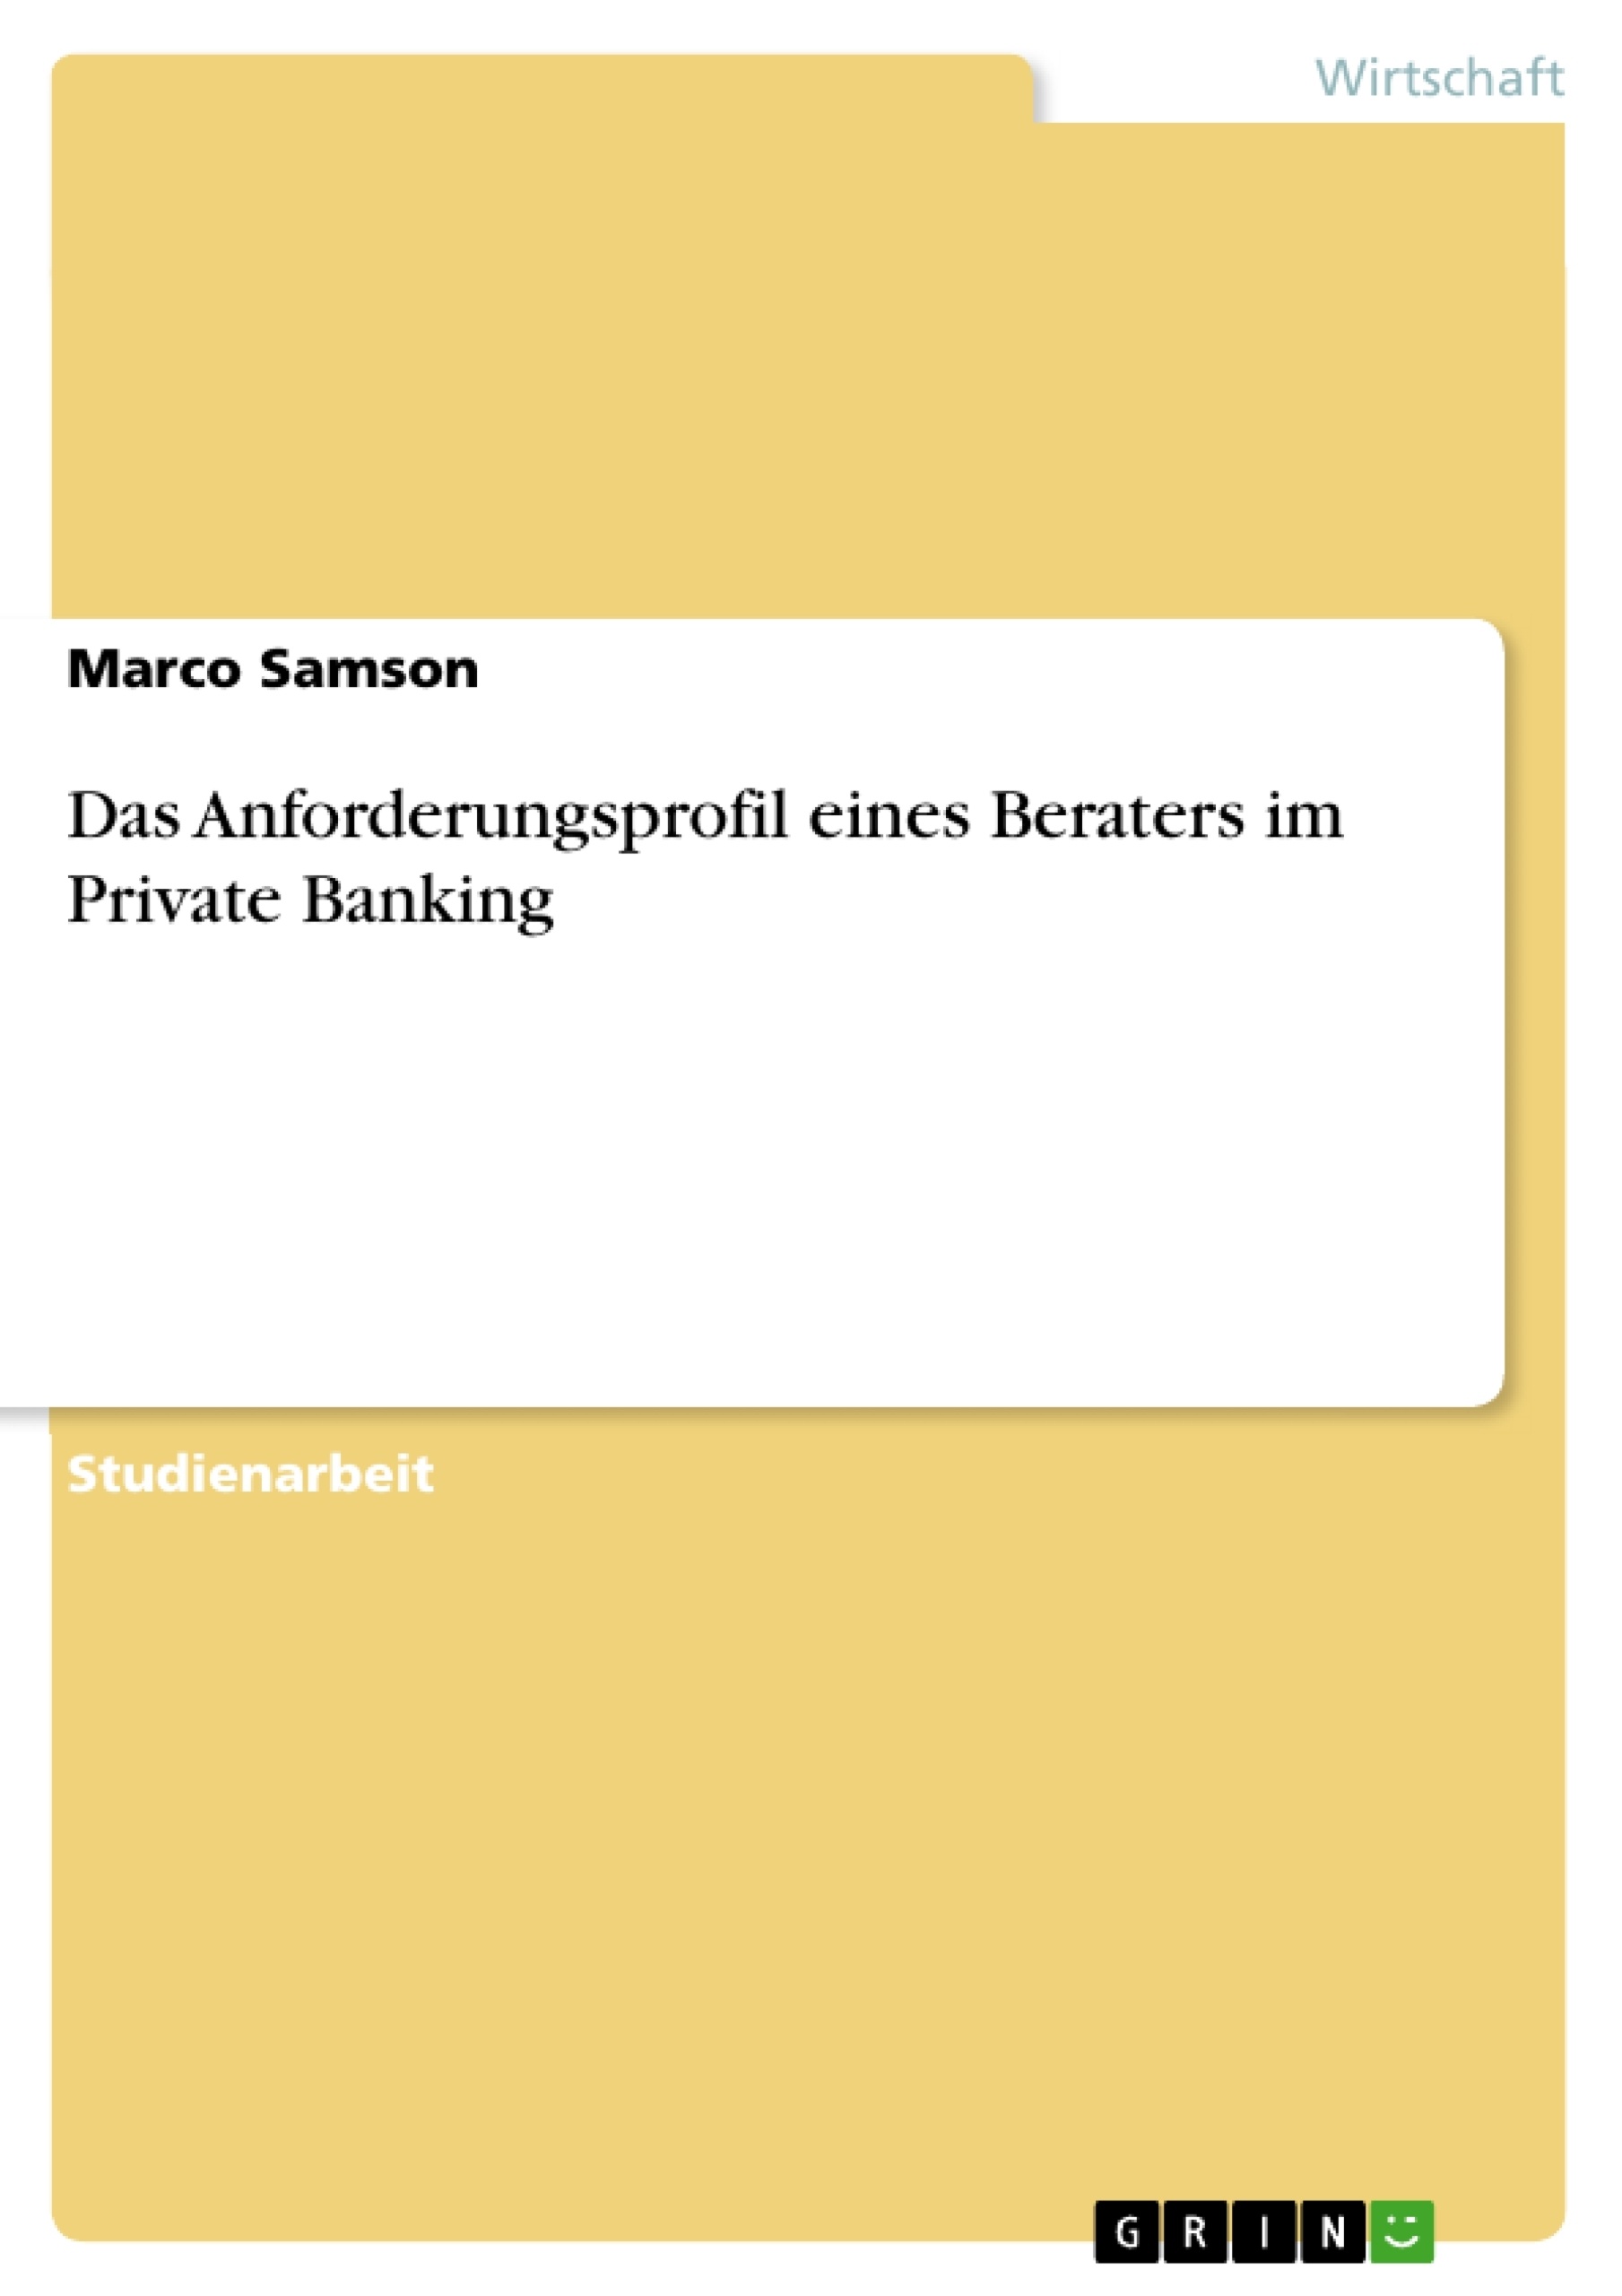 Title: Das Anforderungsprofil eines Beraters im Private Banking